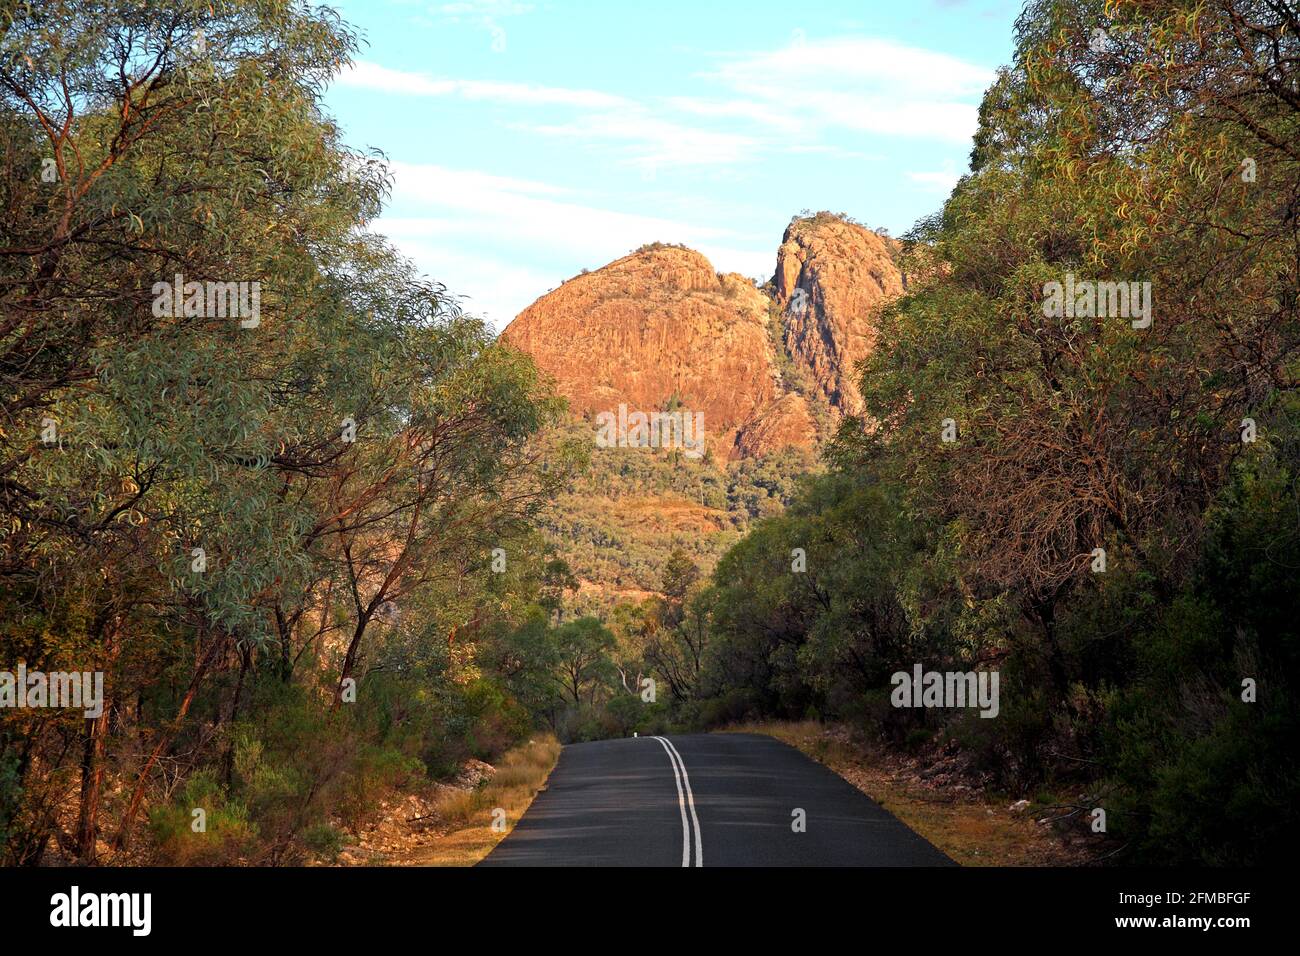 Belougery Split Rock, parc national de Warrumbungle, près de Coonabarrabran, ouest de la Nouvelle-Galles du Sud, Australie. Banque D'Images